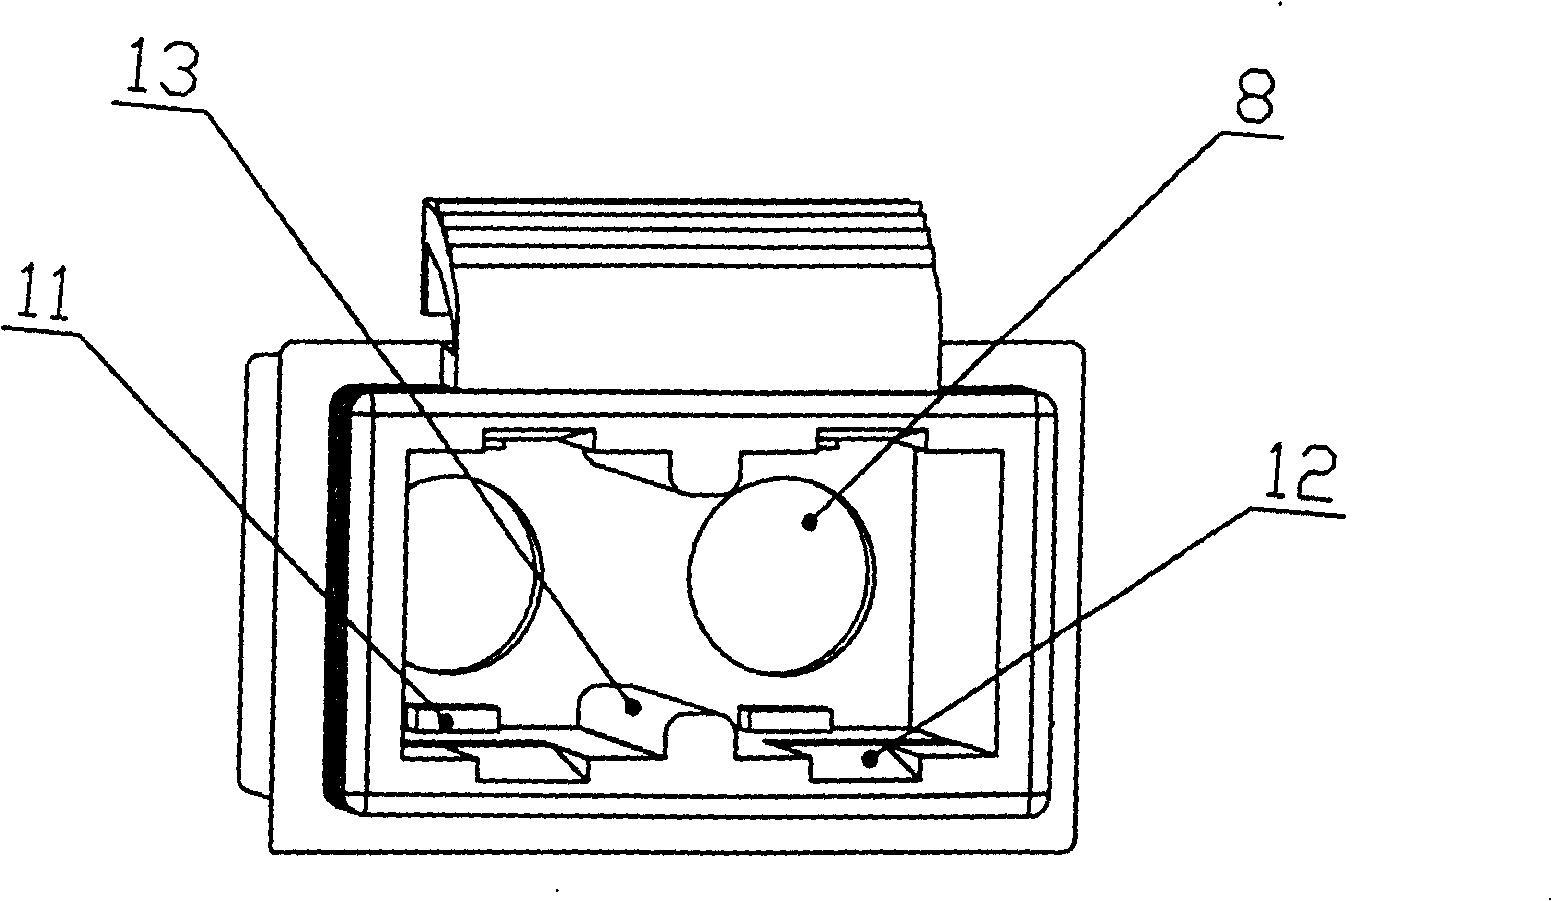 A connecting apparatus for optical fibre